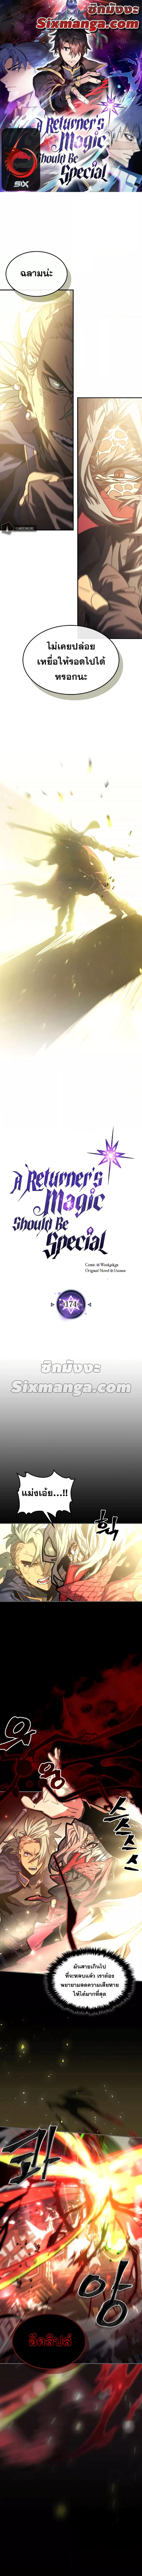 A Returner's Magic Should Be Special 174 (1)